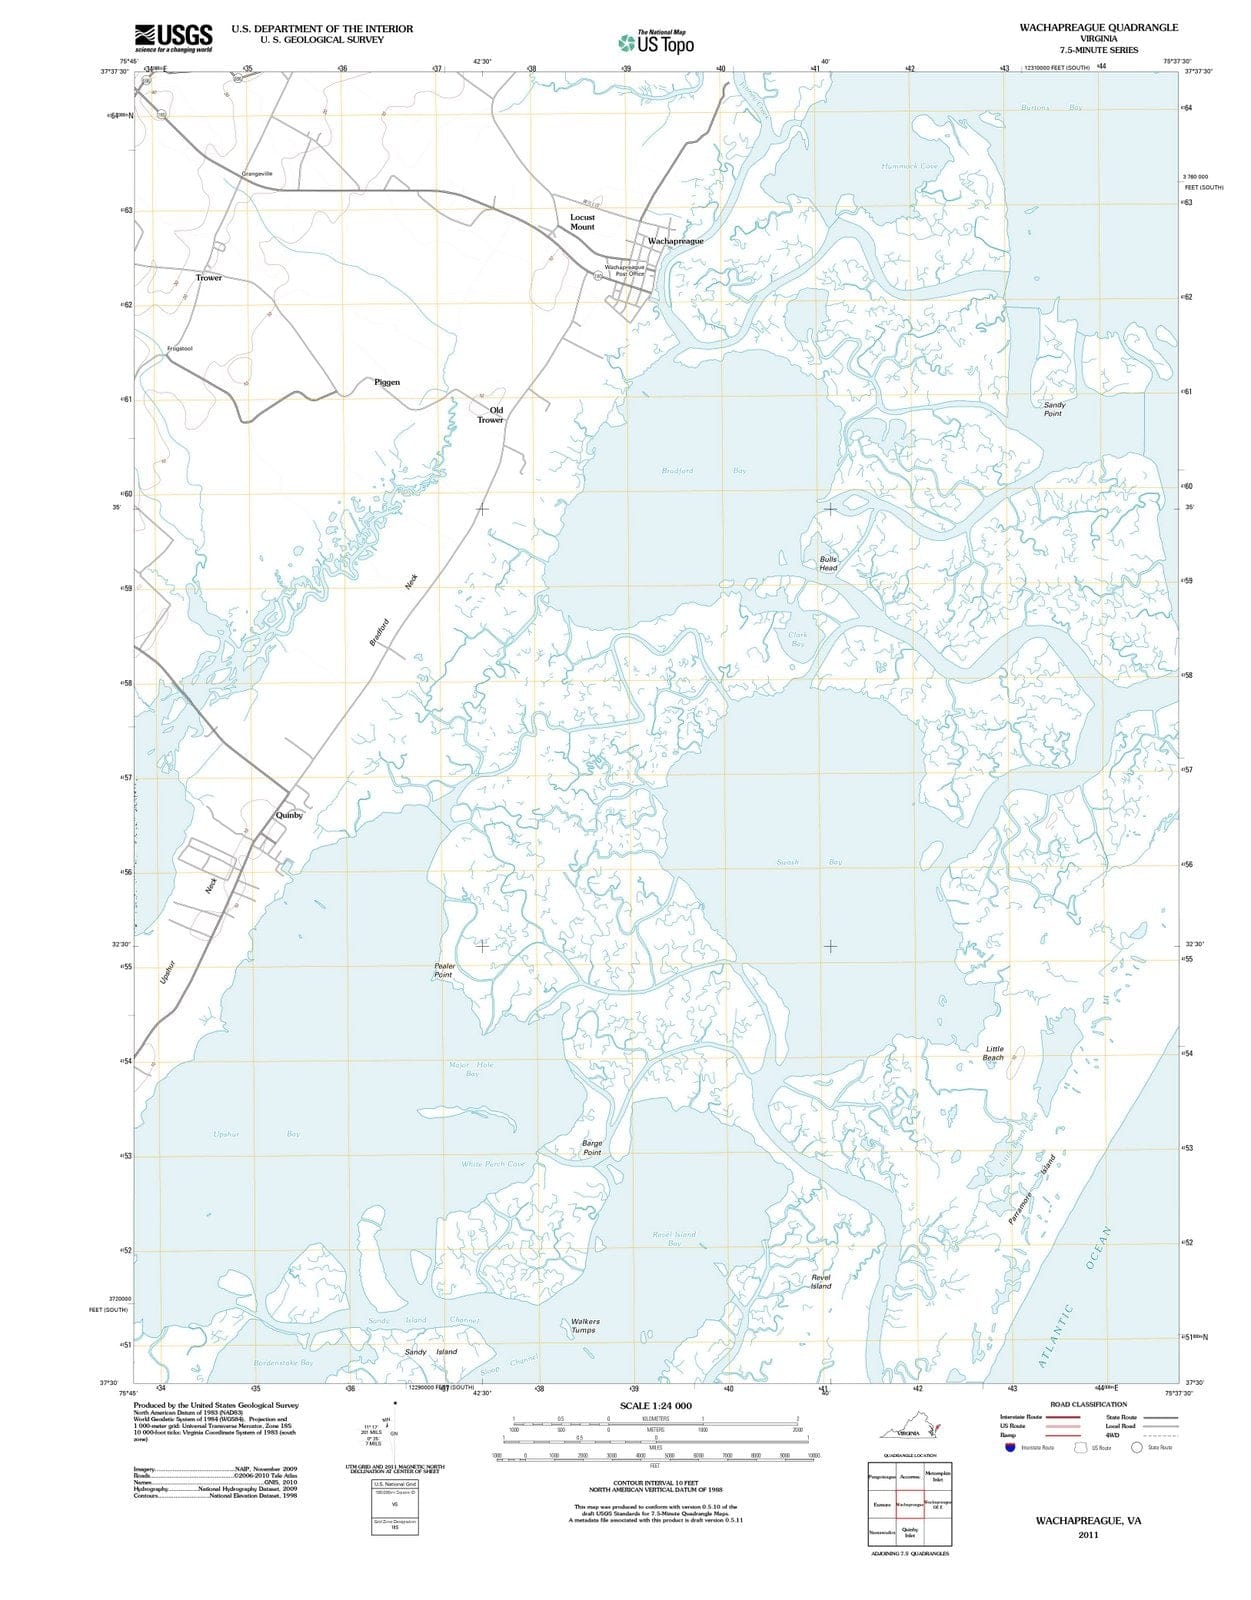 2011 Wachapreague, VA - Virginia - USGS Topographic Map